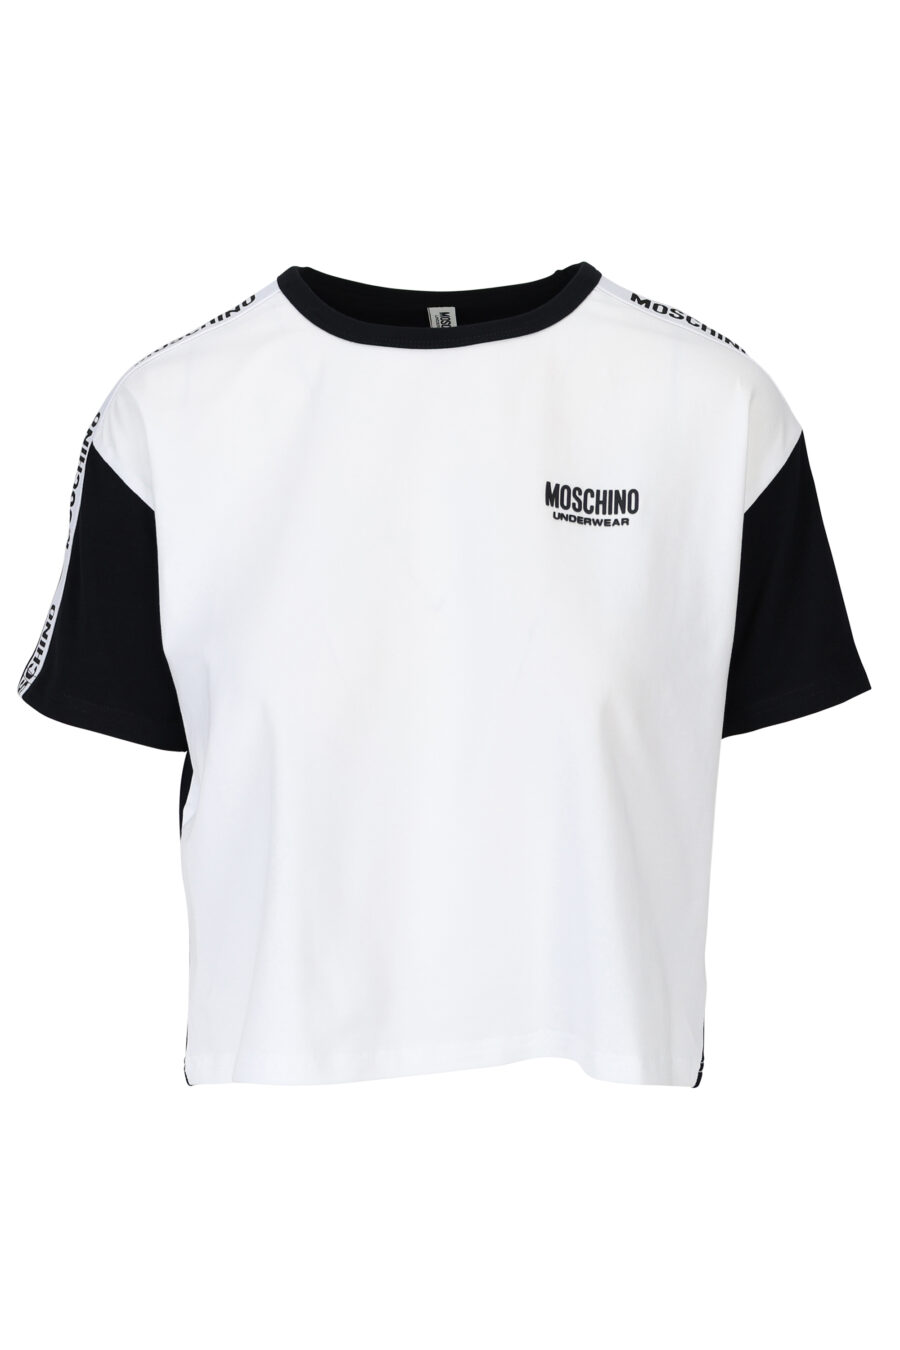 Camiseta blanca de mangas y espalda negra y logo en cinta - 667113062037